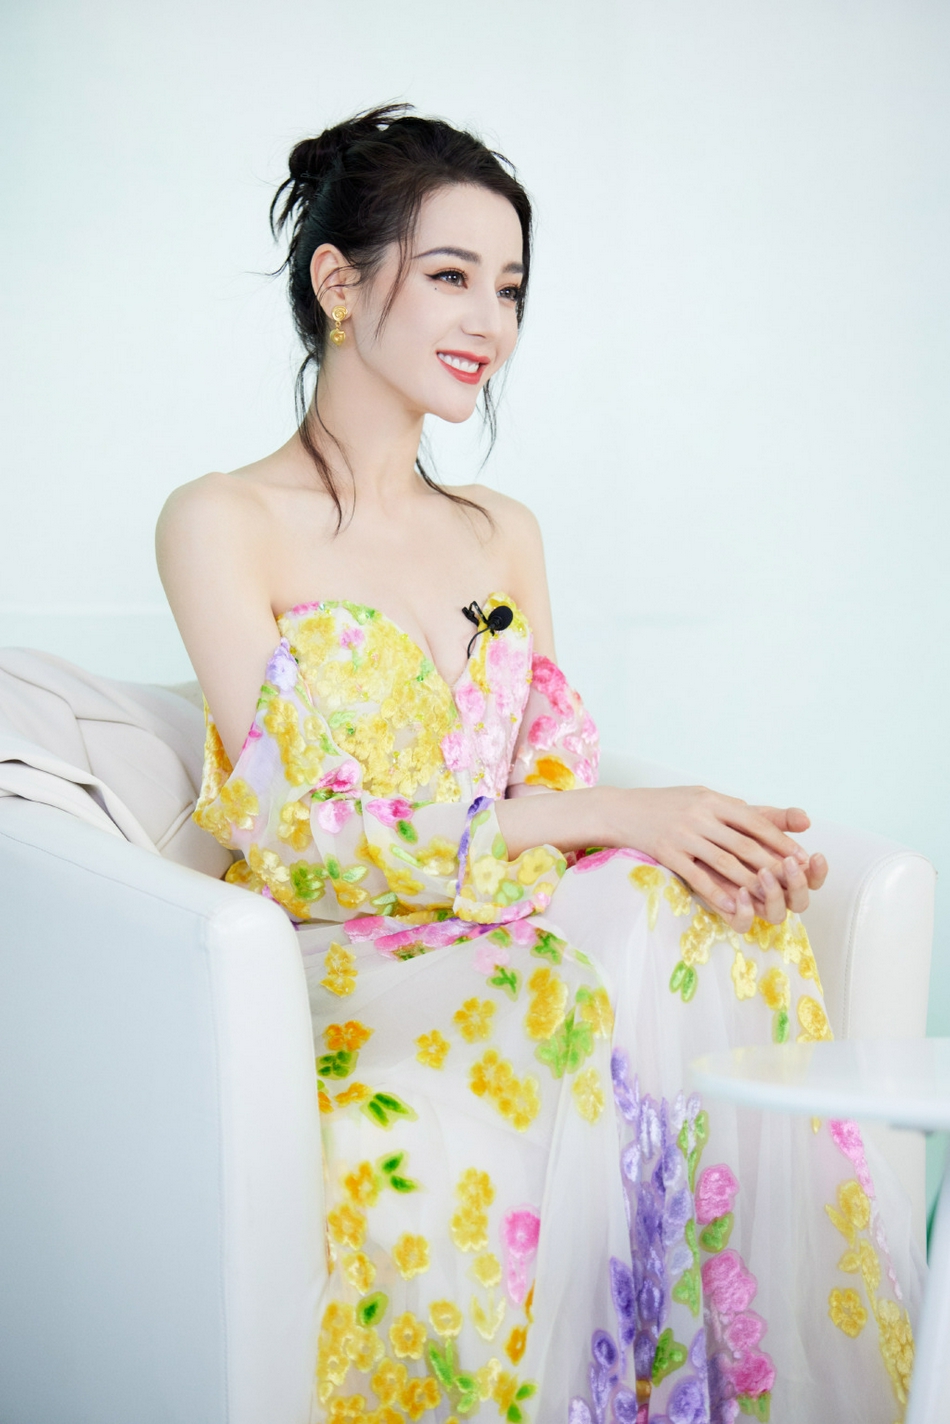 Địch Lệ Nhiệt Ba diện váy hoa khoe bờ vai trần gợi cảm trong bộ ảnh mới